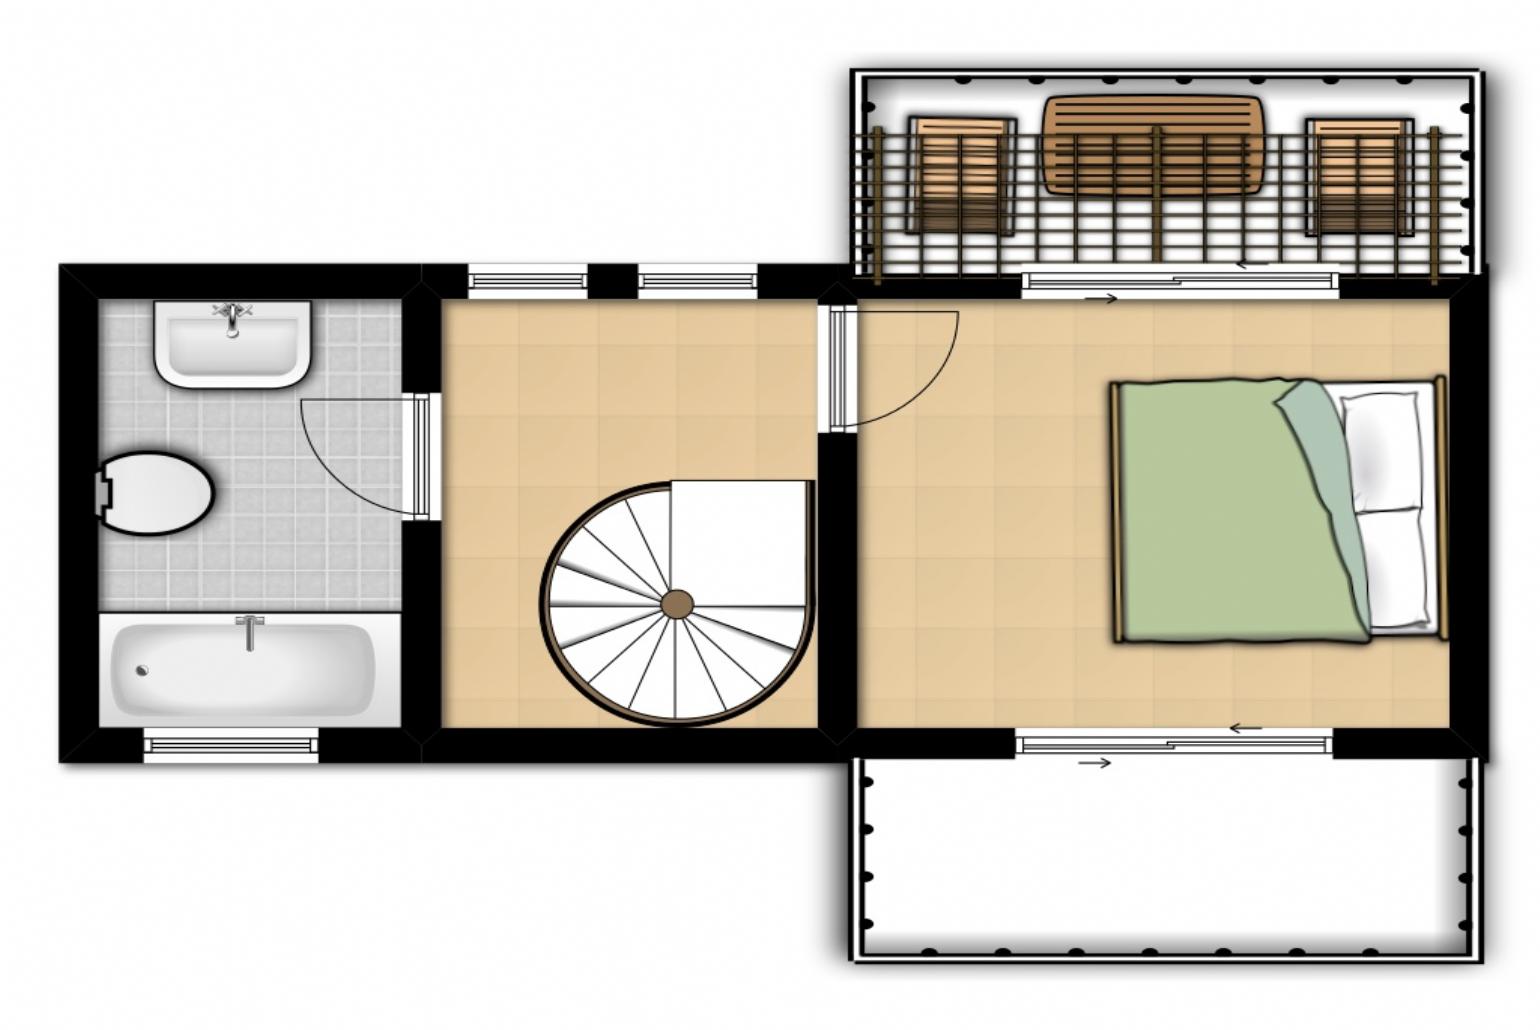 Floor Plan: First Floor